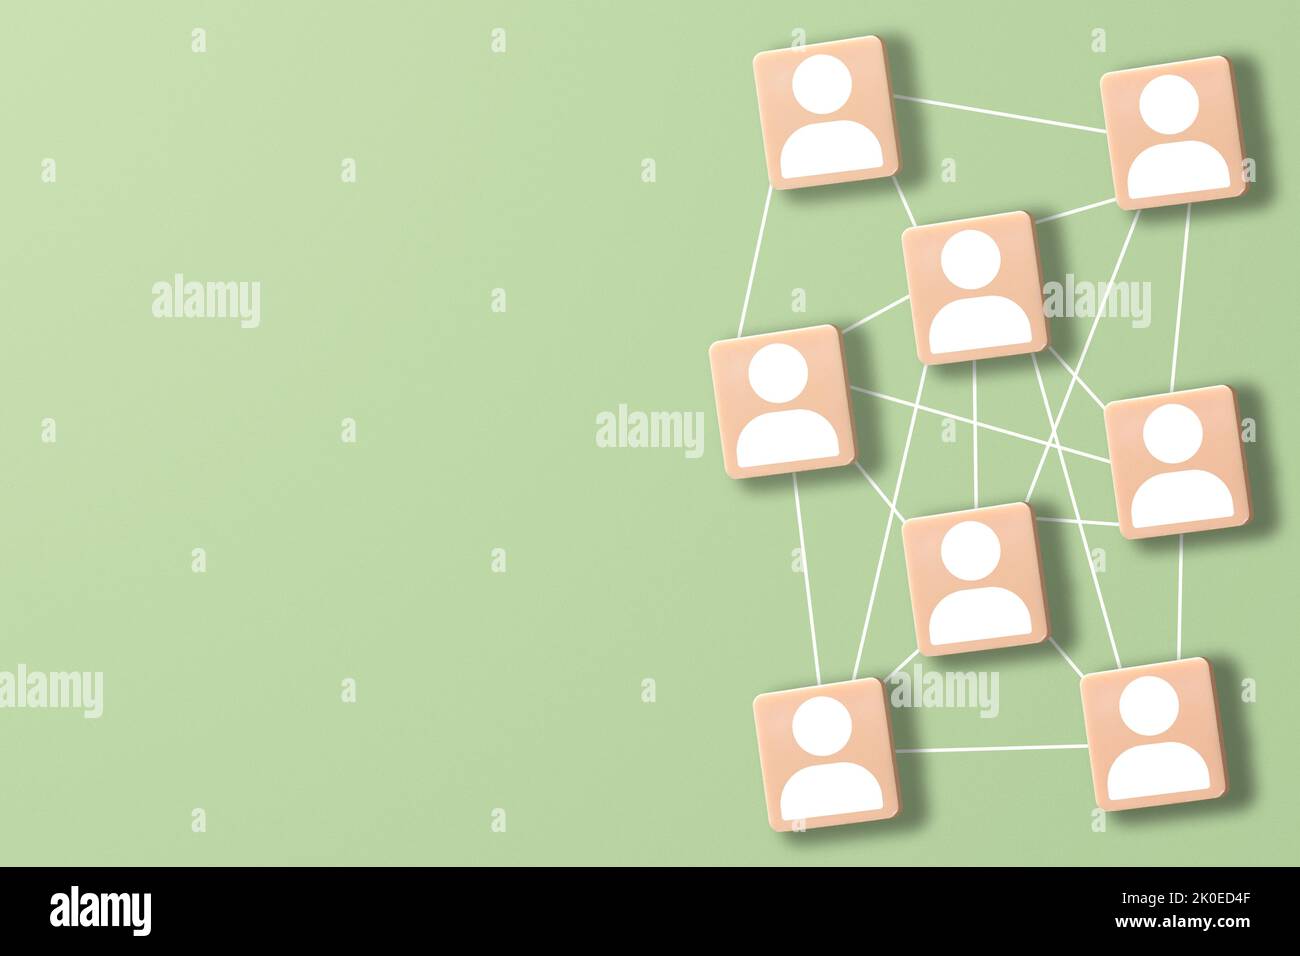 Design von oben auf grünem Hintergrund des Netzwerks mit miteinander verbundenen Mitgliedern und Kopierbereich. Social Media, Marketing, Kommunikation, Teamarbeit. Stockfoto